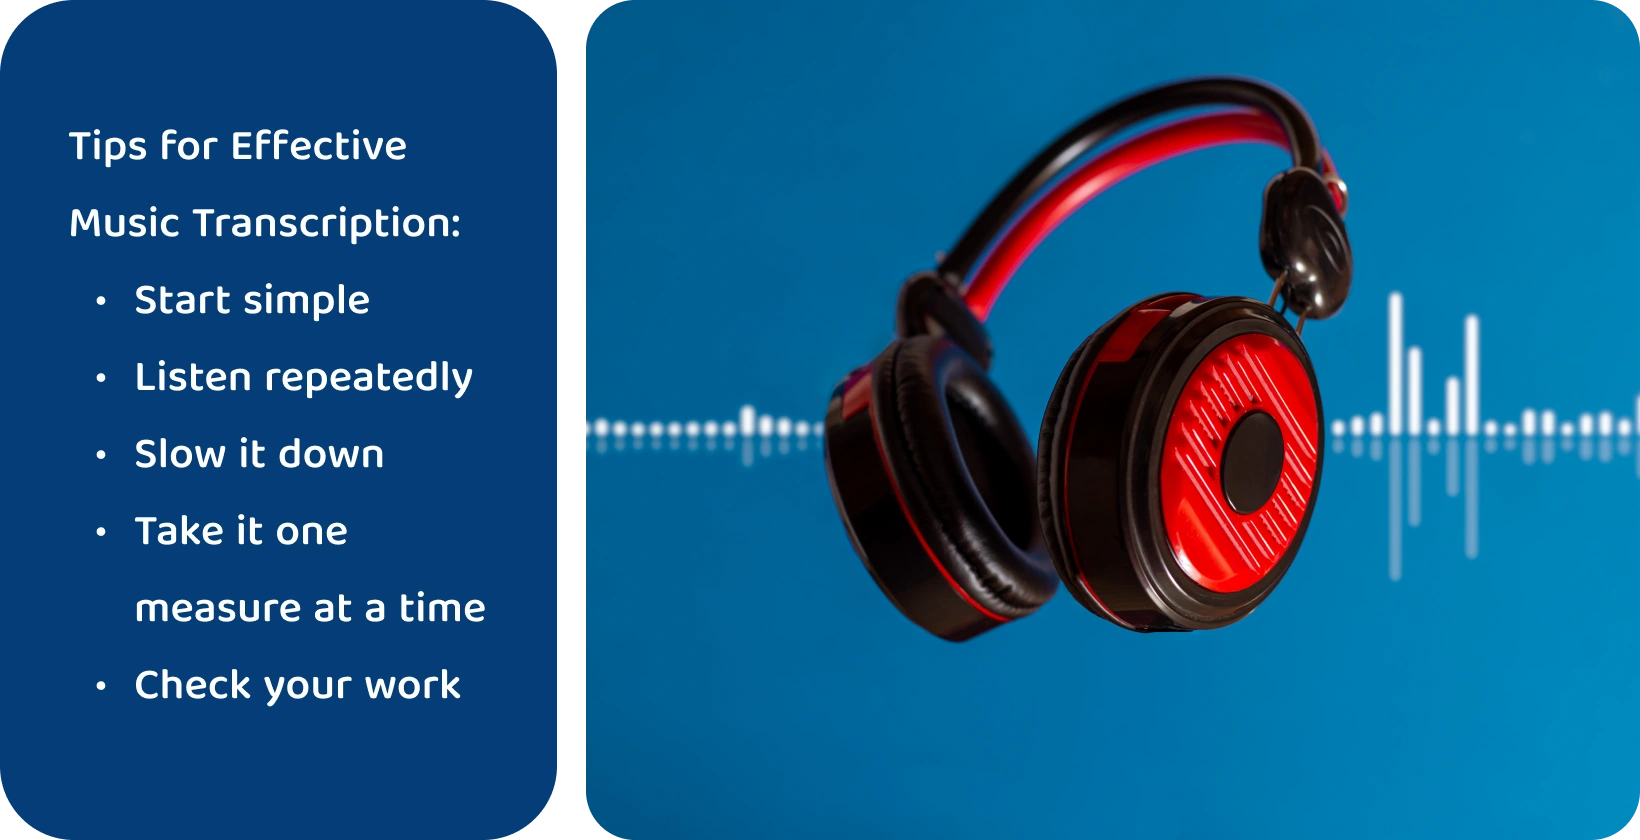 Fejhallgató hullámforma háttér előtt, amely a zene átírásának koncentrált és ismételt hallgatással történő javítására szolgáló eszközöket képvisel.